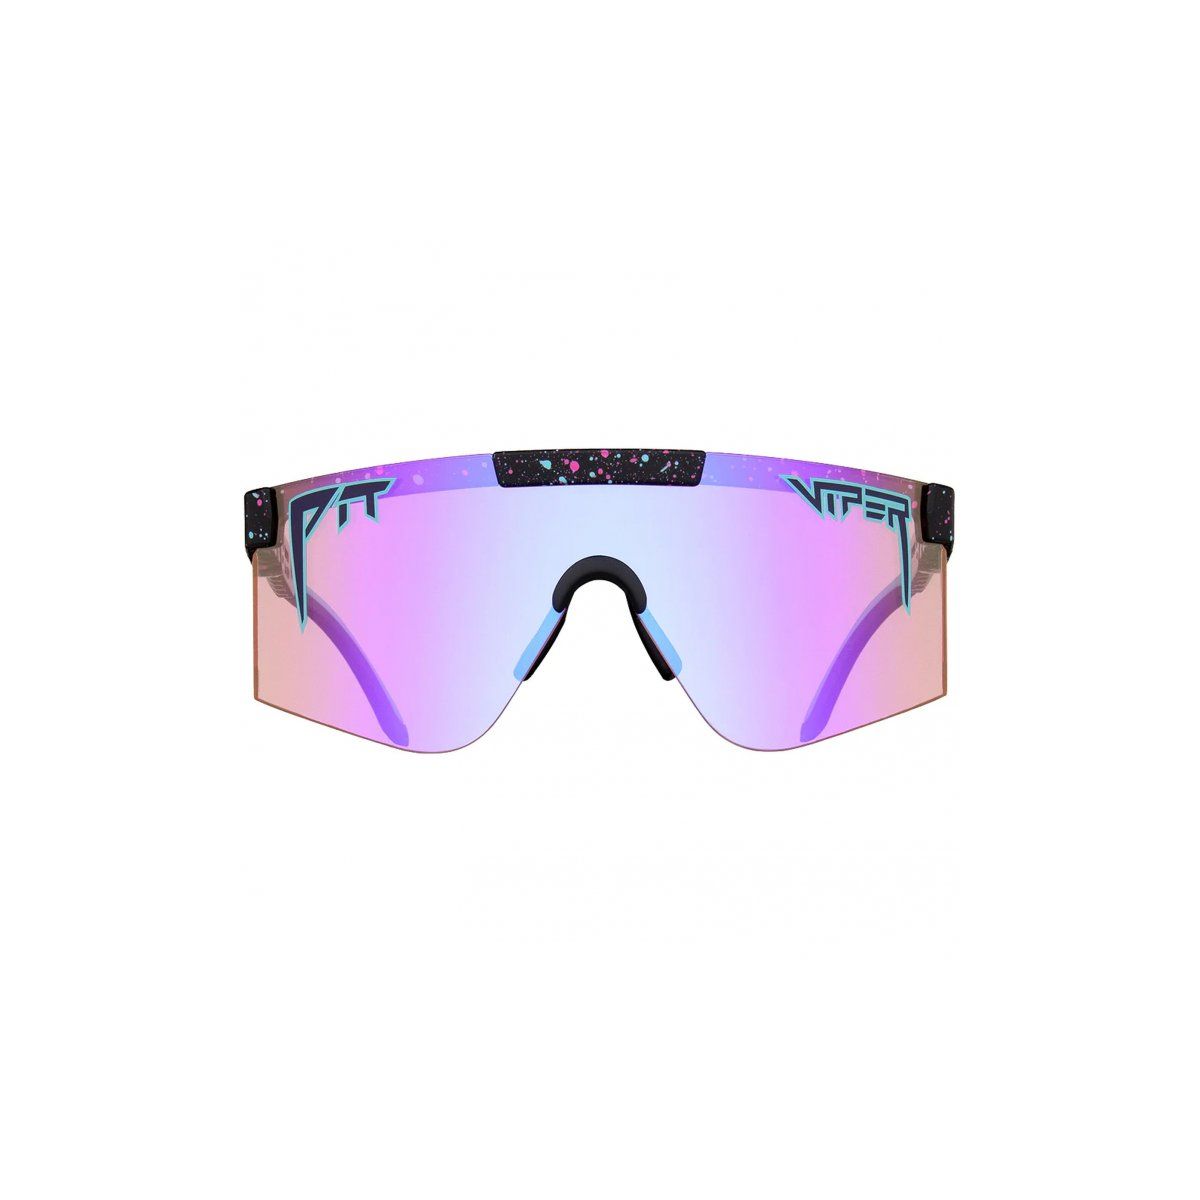 Gafas DE SOL Pit Viper The 2000s - The Afterparty marco negro con patilla flexible y cristal azul y lila